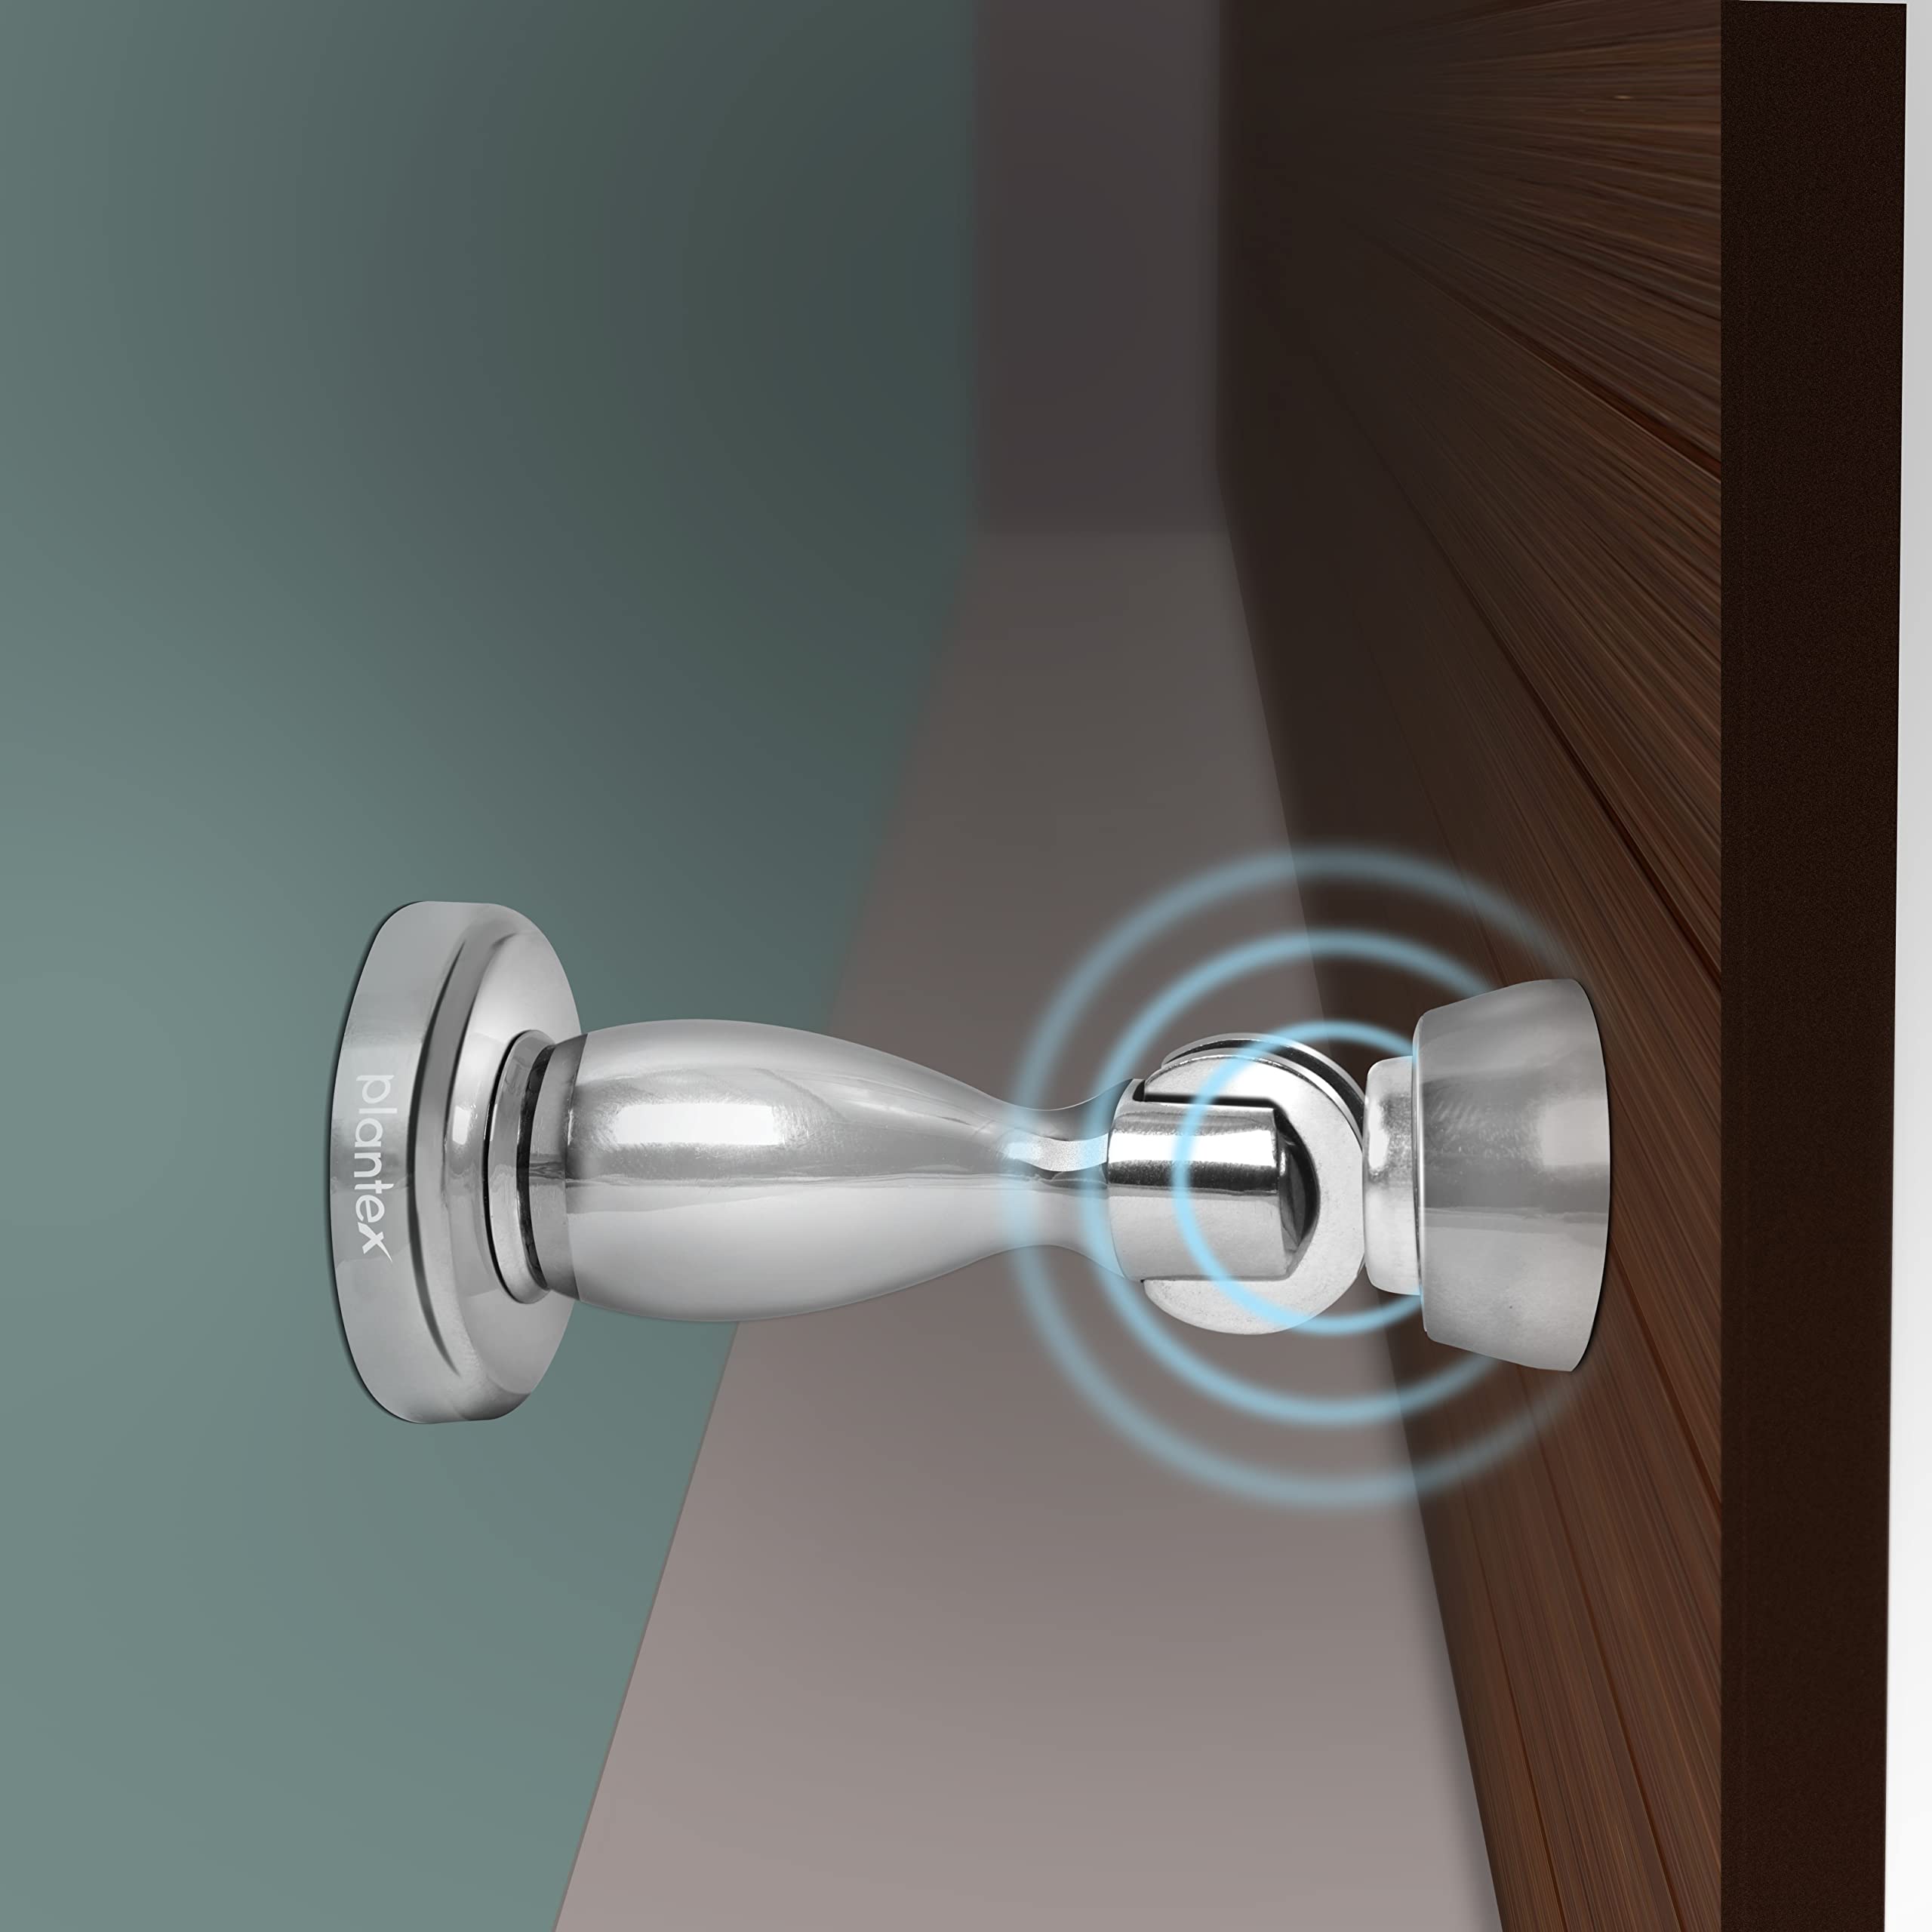 Plantex Magnetic Door Stopper for Home/ 360 Degree Magnet Door Catcher/Door Holder for Main Door/Bedroom/Office and Hotel Door - Pack of 20 (4 inch, Chrome)